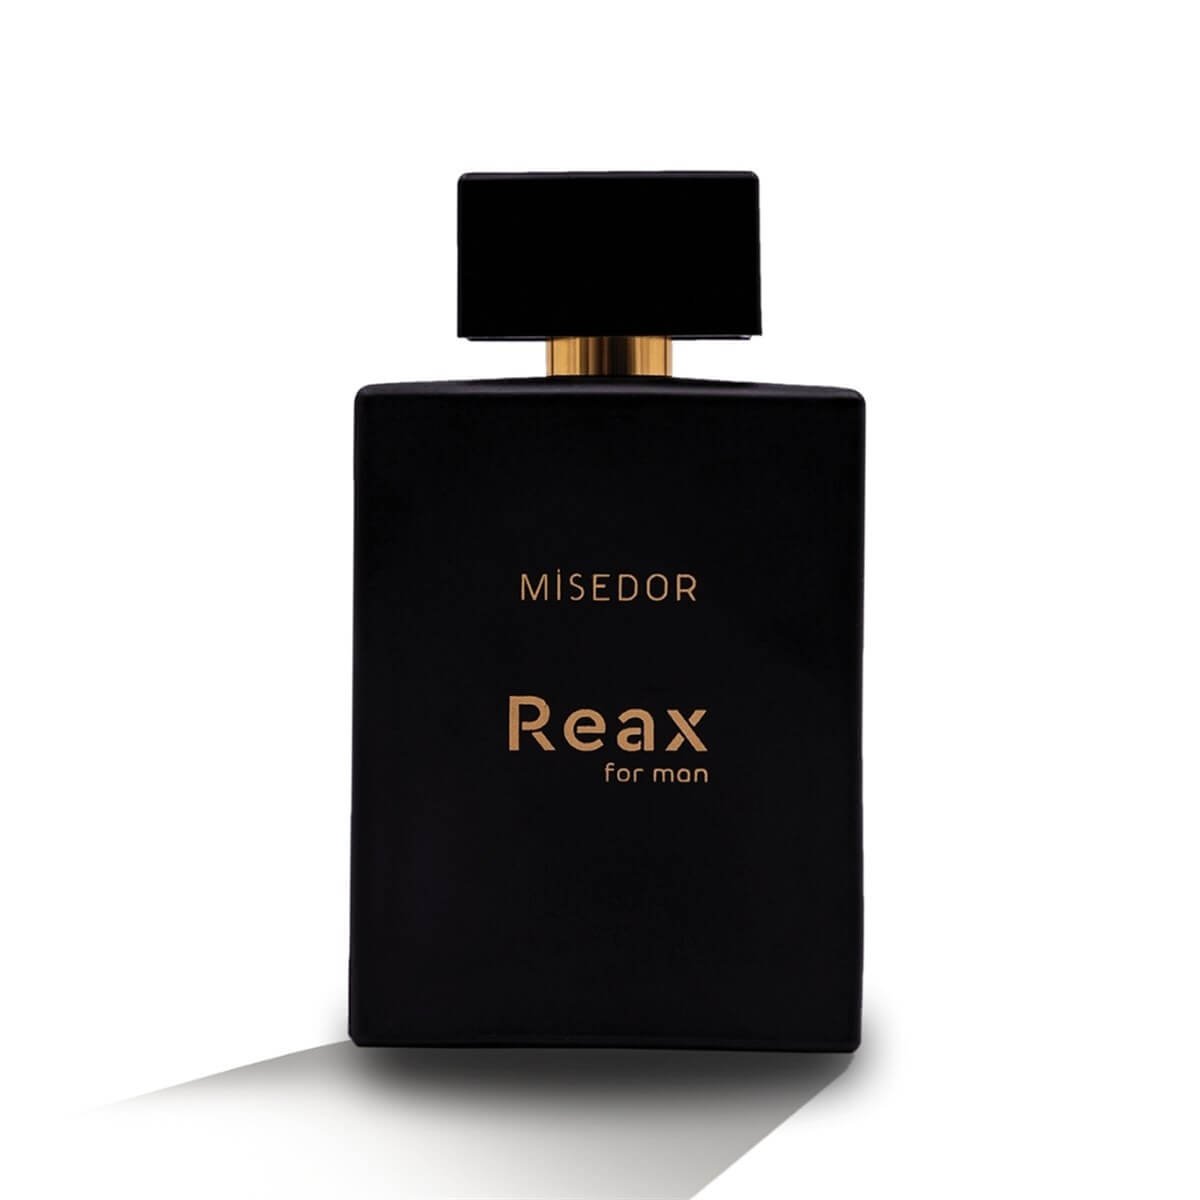 Misedor Reax Edp 100 ml Erkek Parfüm | Misedor